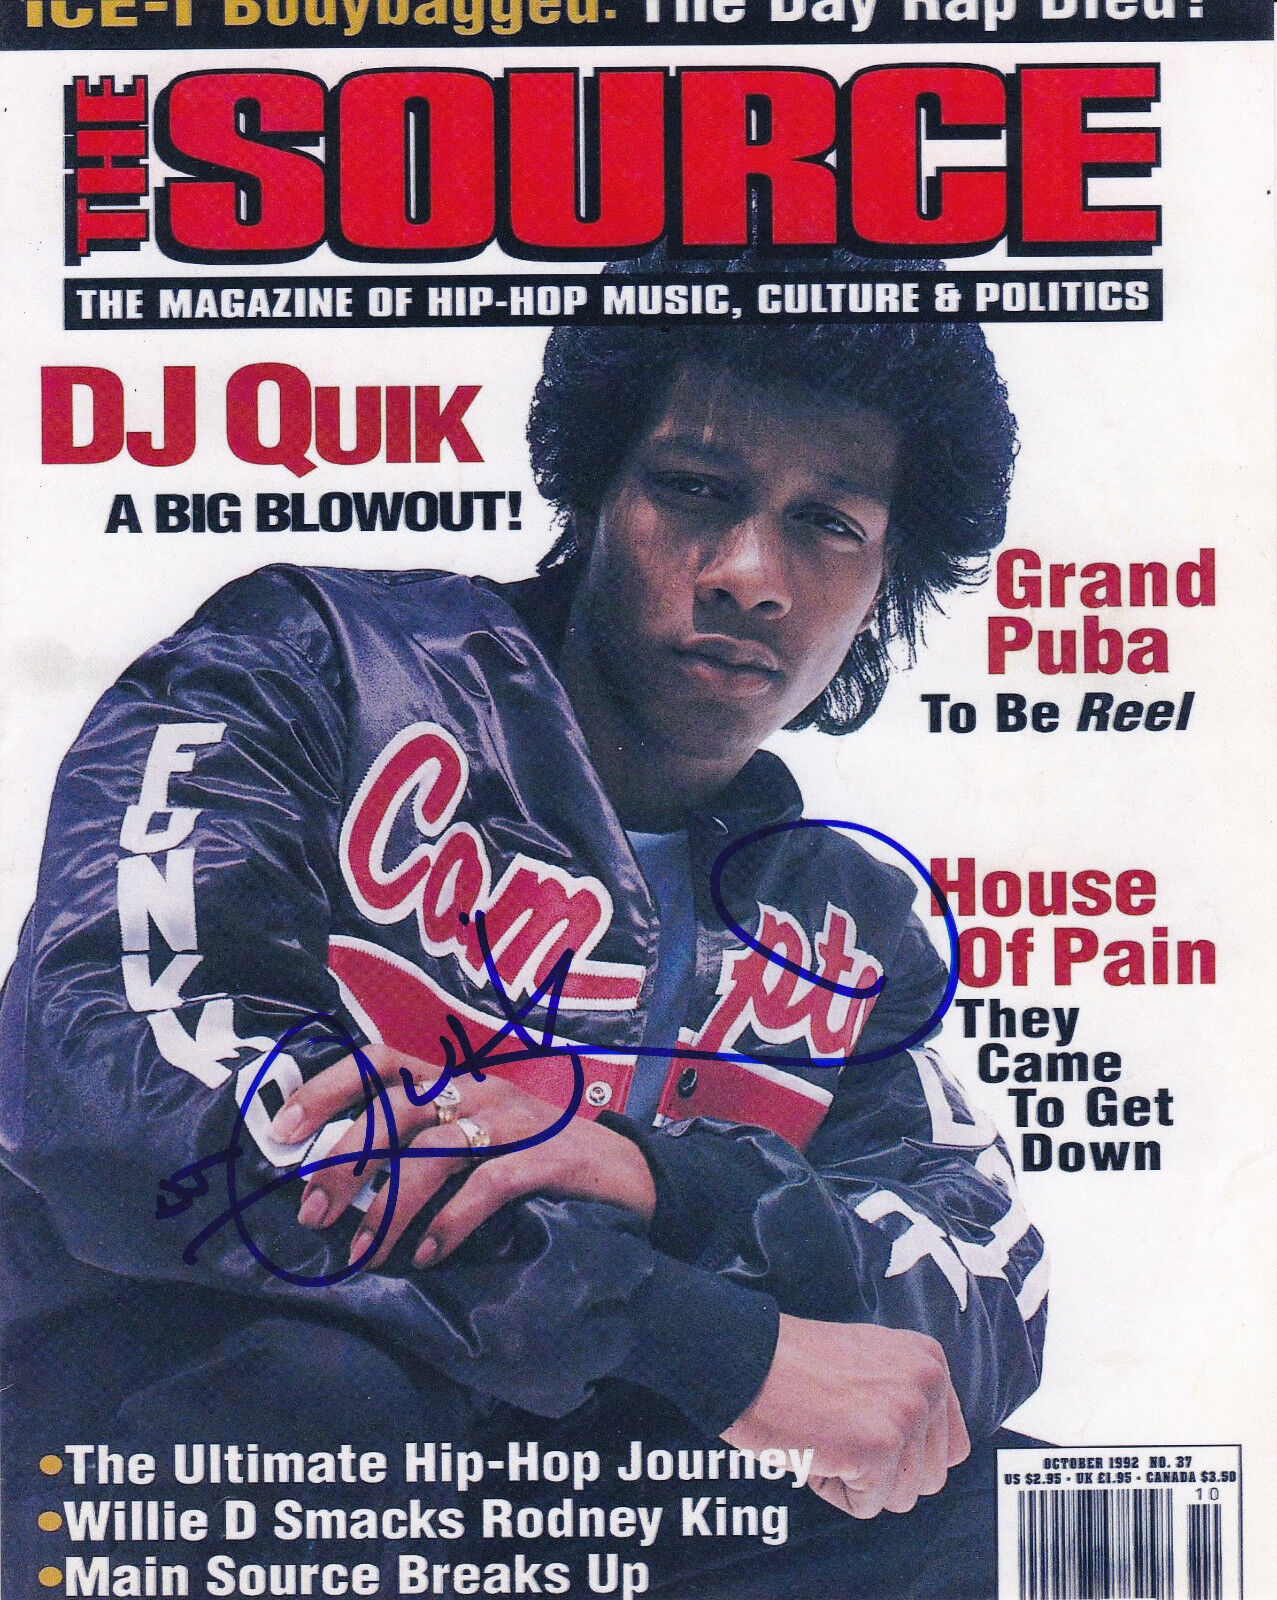 DJ Quik Signed 8x10 Photo Poster painting Way 2 Fonky Rhythm-al-ism Rapper Autograph CPT Hip Hop